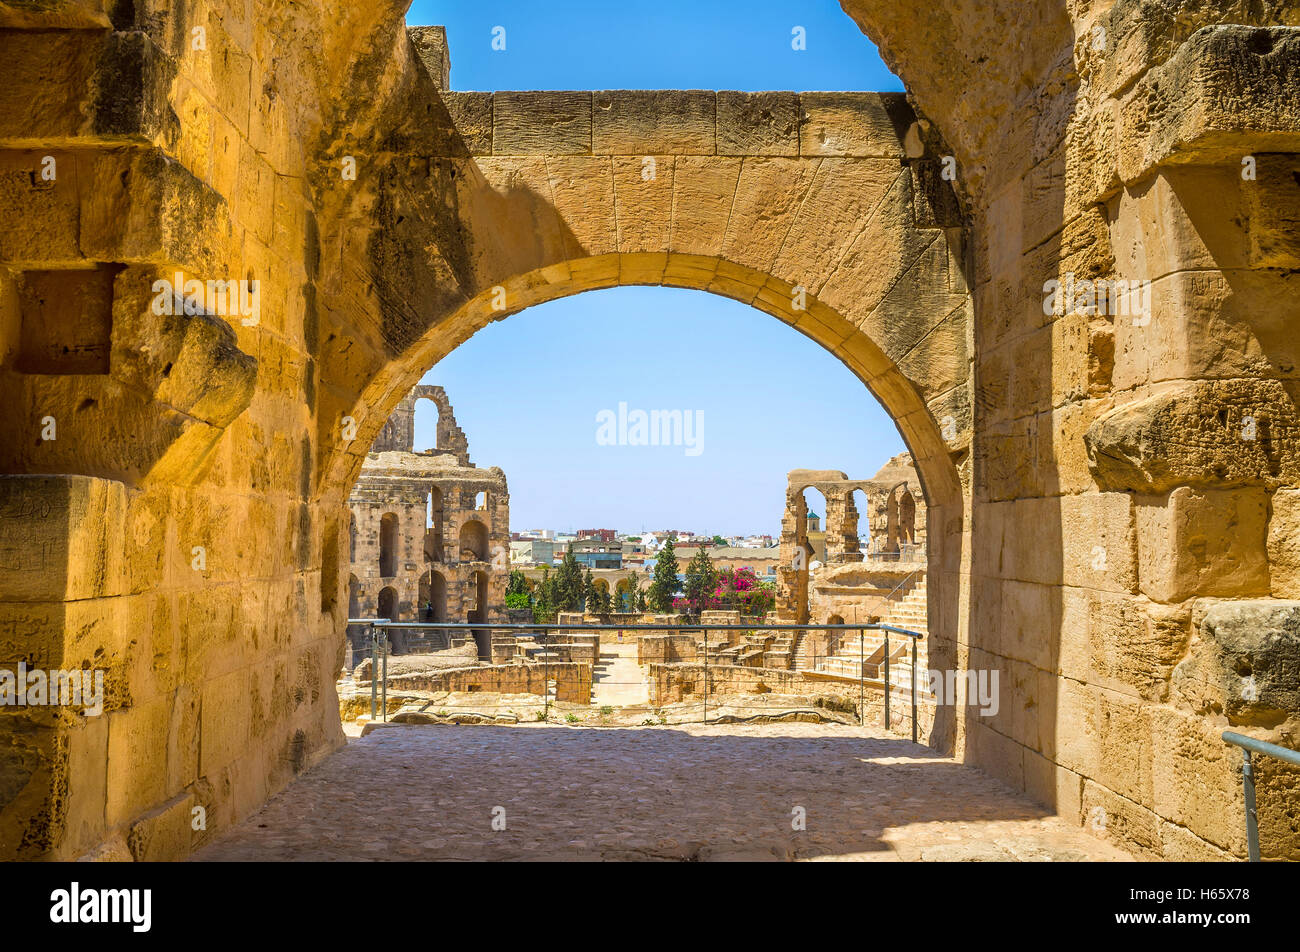 La vue sur les vestiges romains d'amphithéâtre à travers l'arche de son temple, El Jem, Tunisie. Banque D'Images